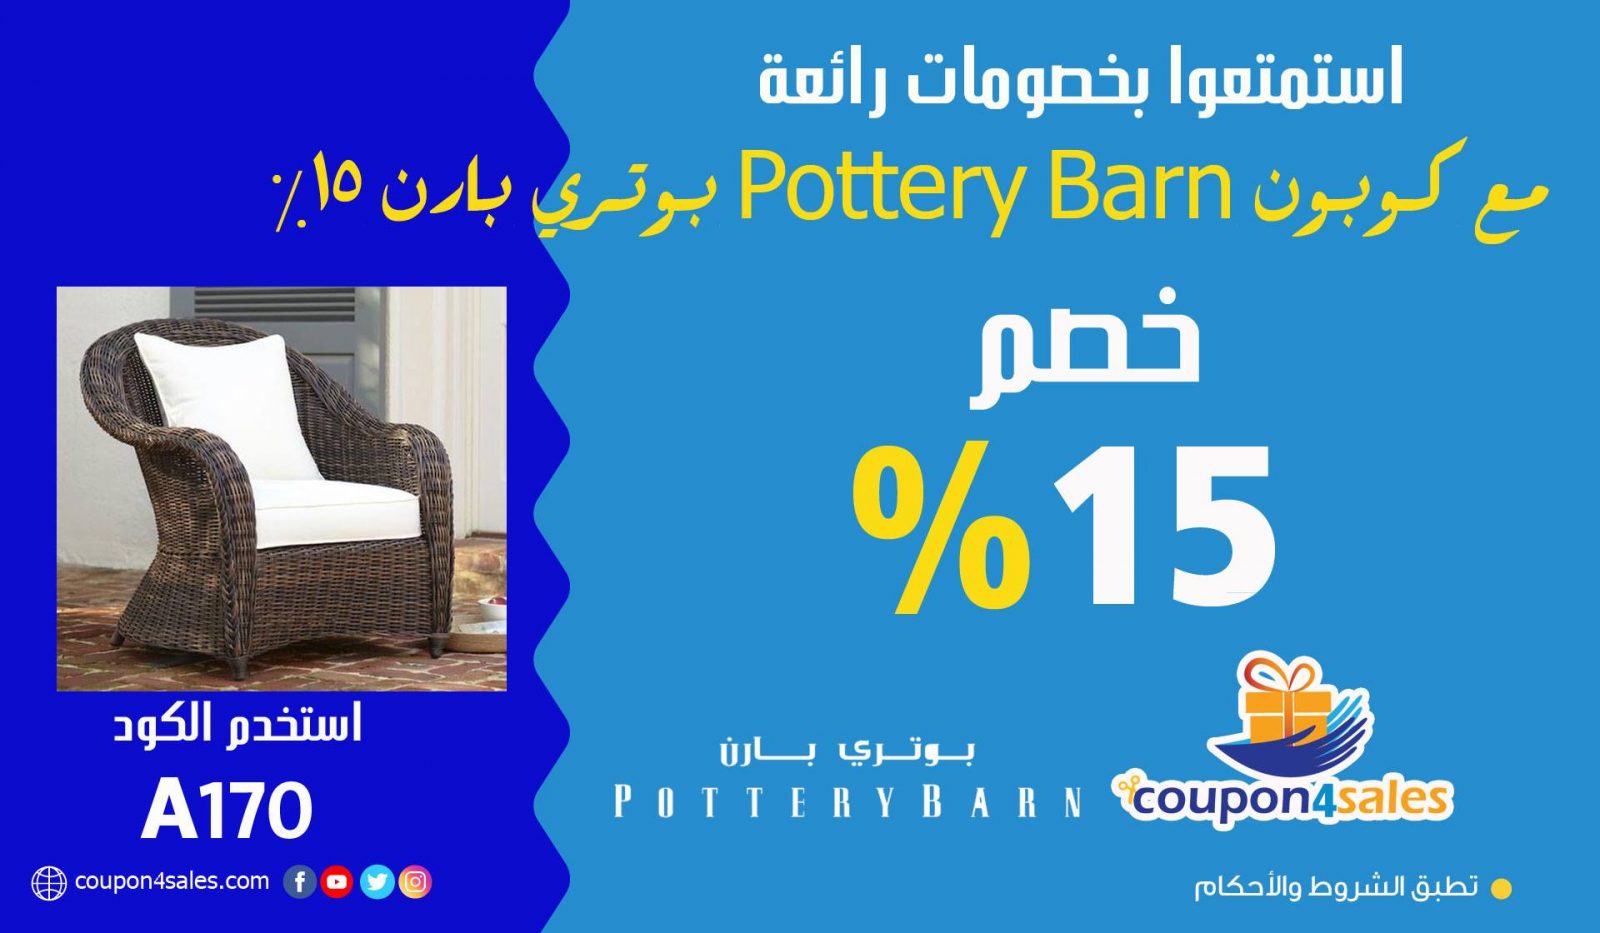 كوبون Pottery Barn بوتري بارن 15%